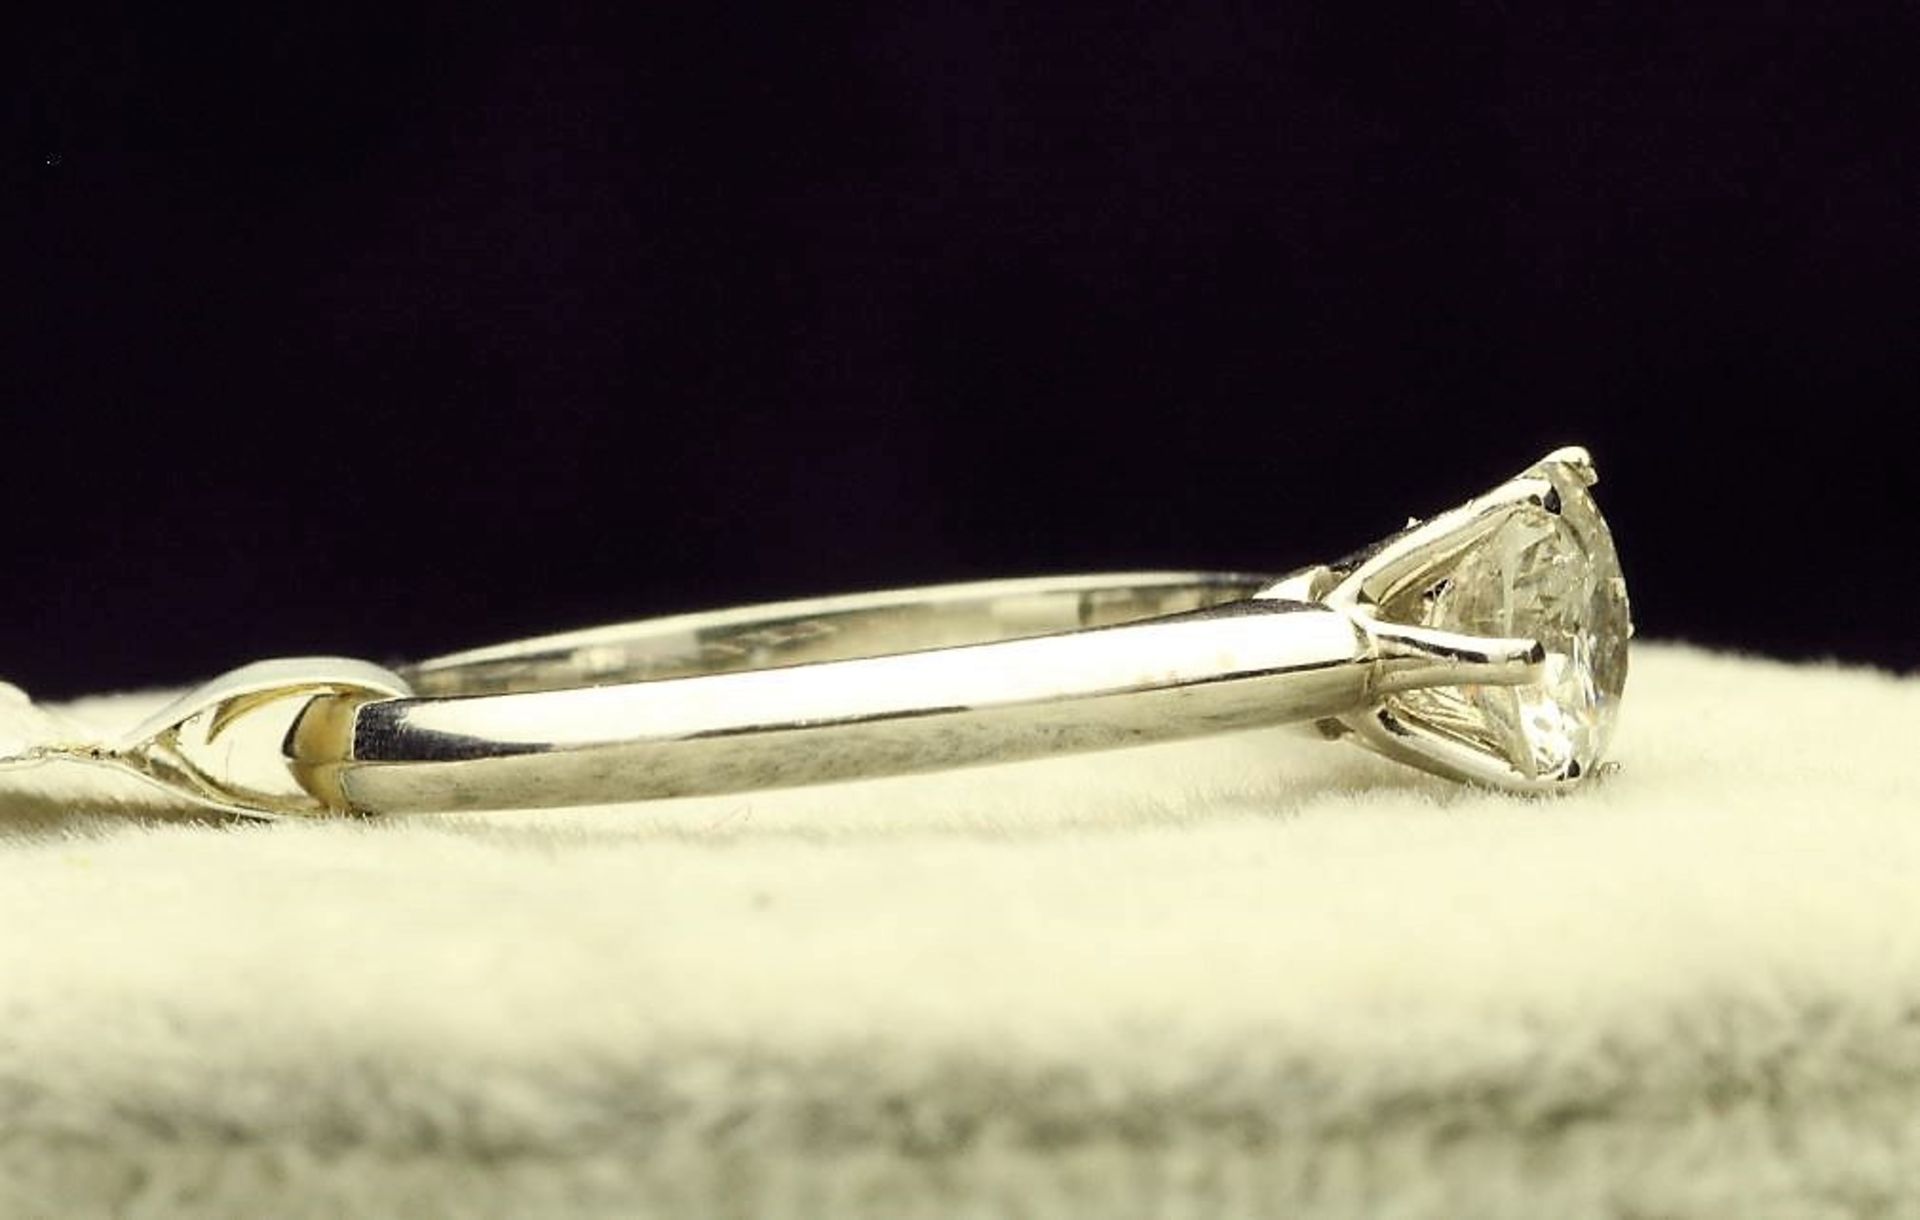 18k White Gold Single Stone Prong Set Diamond Ring 0.70 - Image 2 of 4